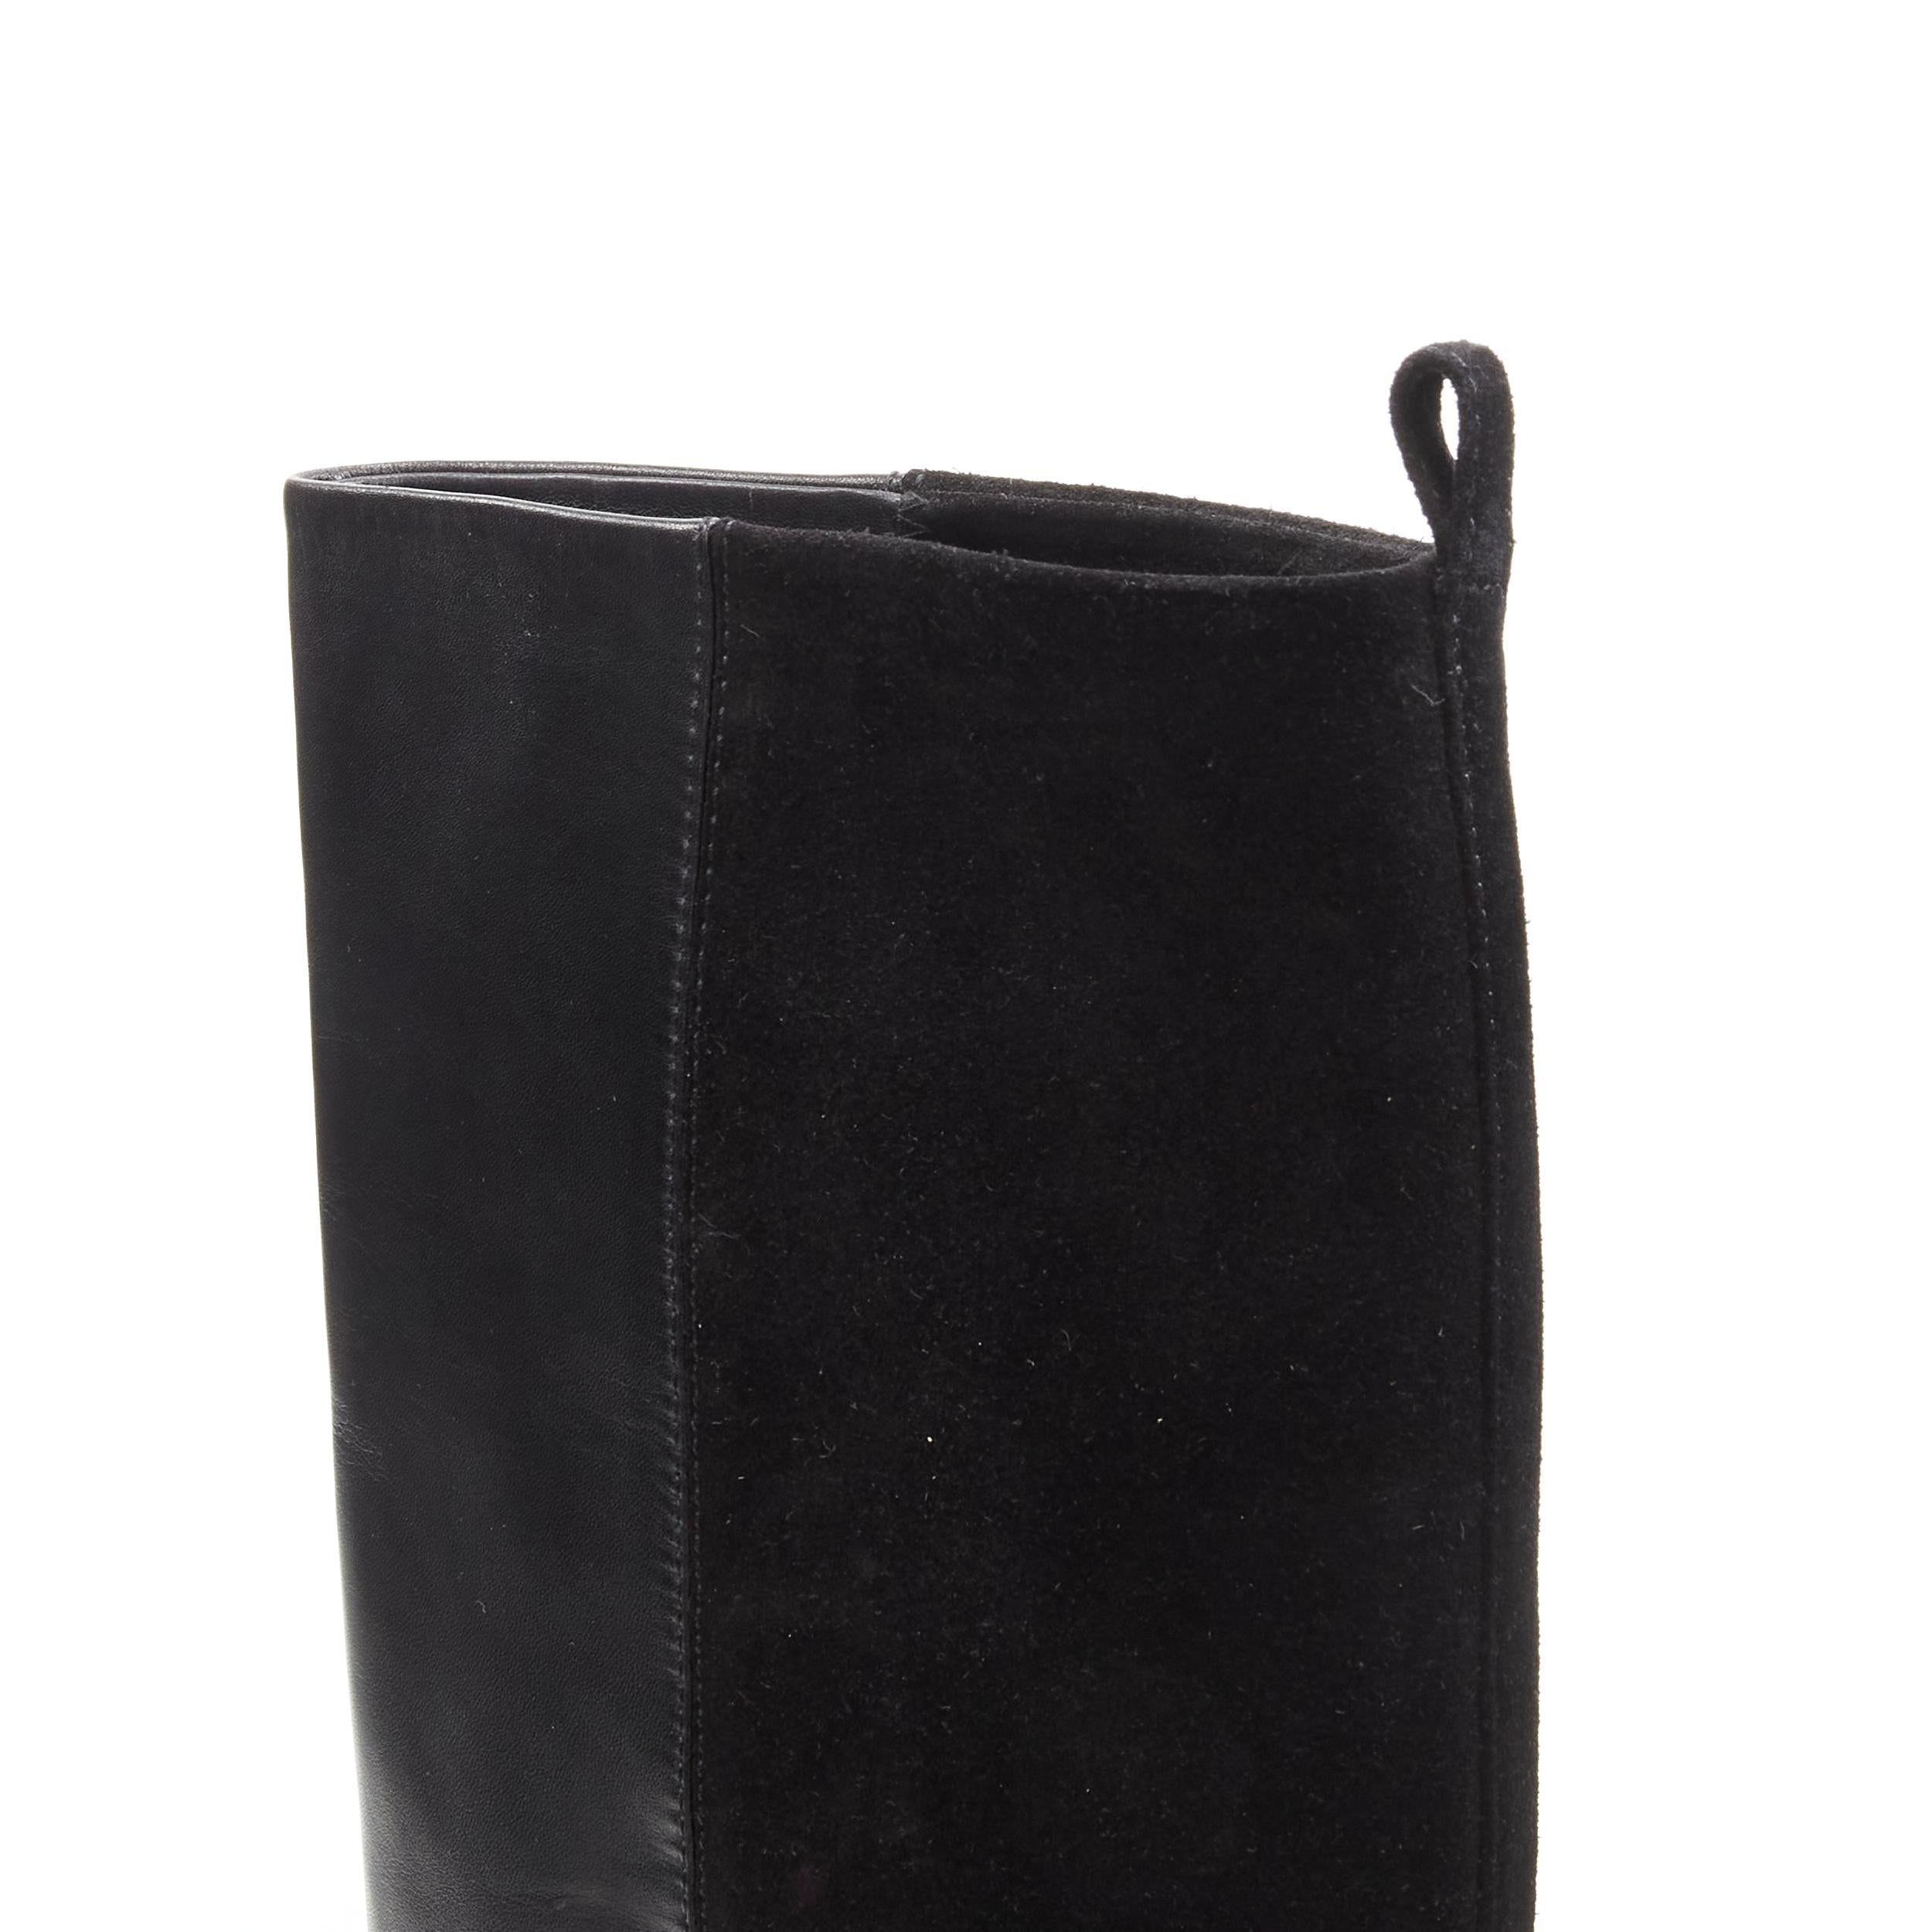 OLD CELINE Phoebe Philo black leather suede 50/50 platform wedge boot EU38 For Sale 4